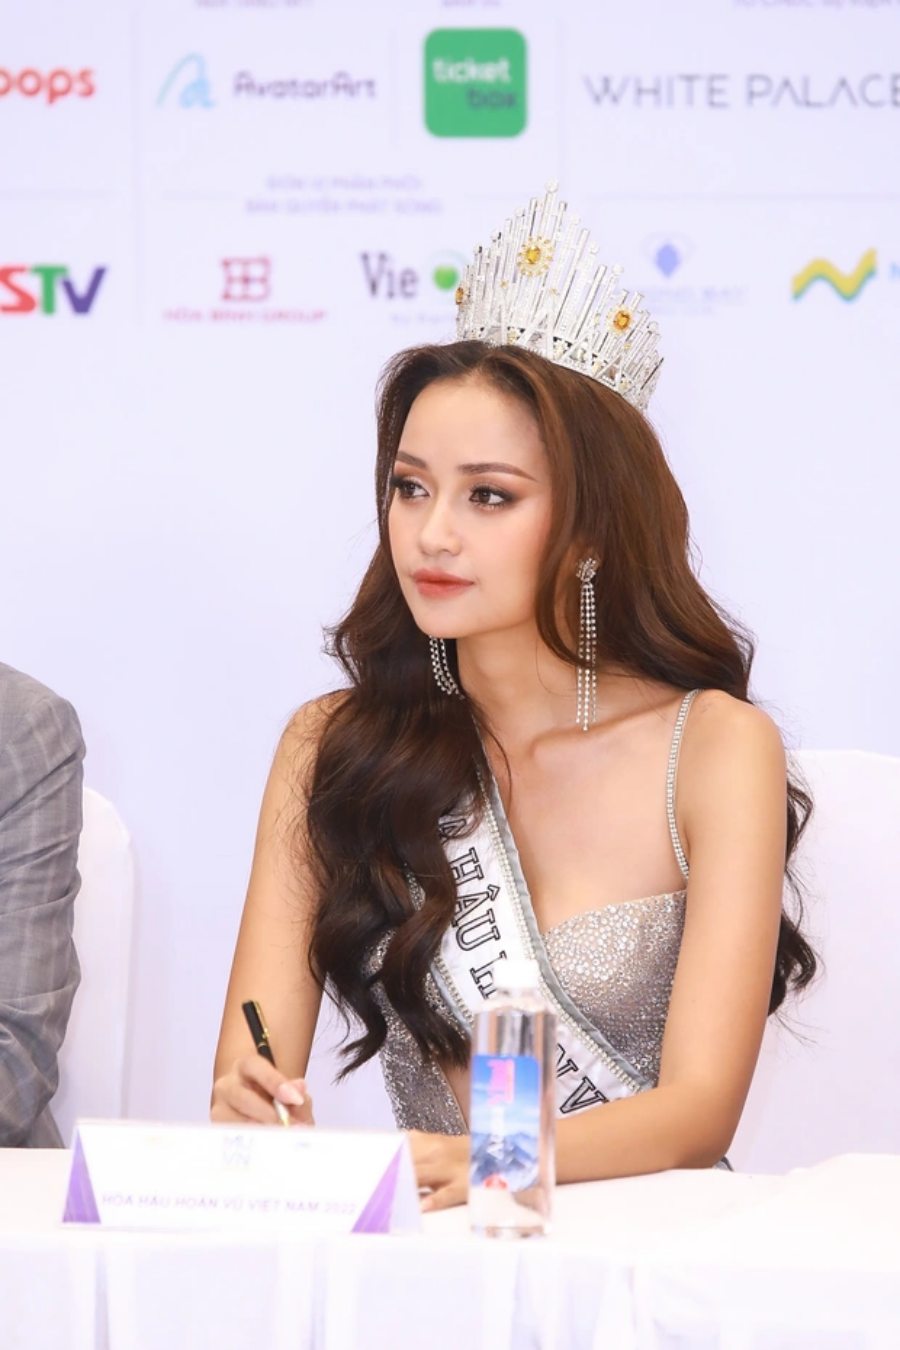 Tân Hoa hậu Hoàn vũ Việt Nam 2022 Ngọc Châu: "Tôi chưa từng yêu ai"